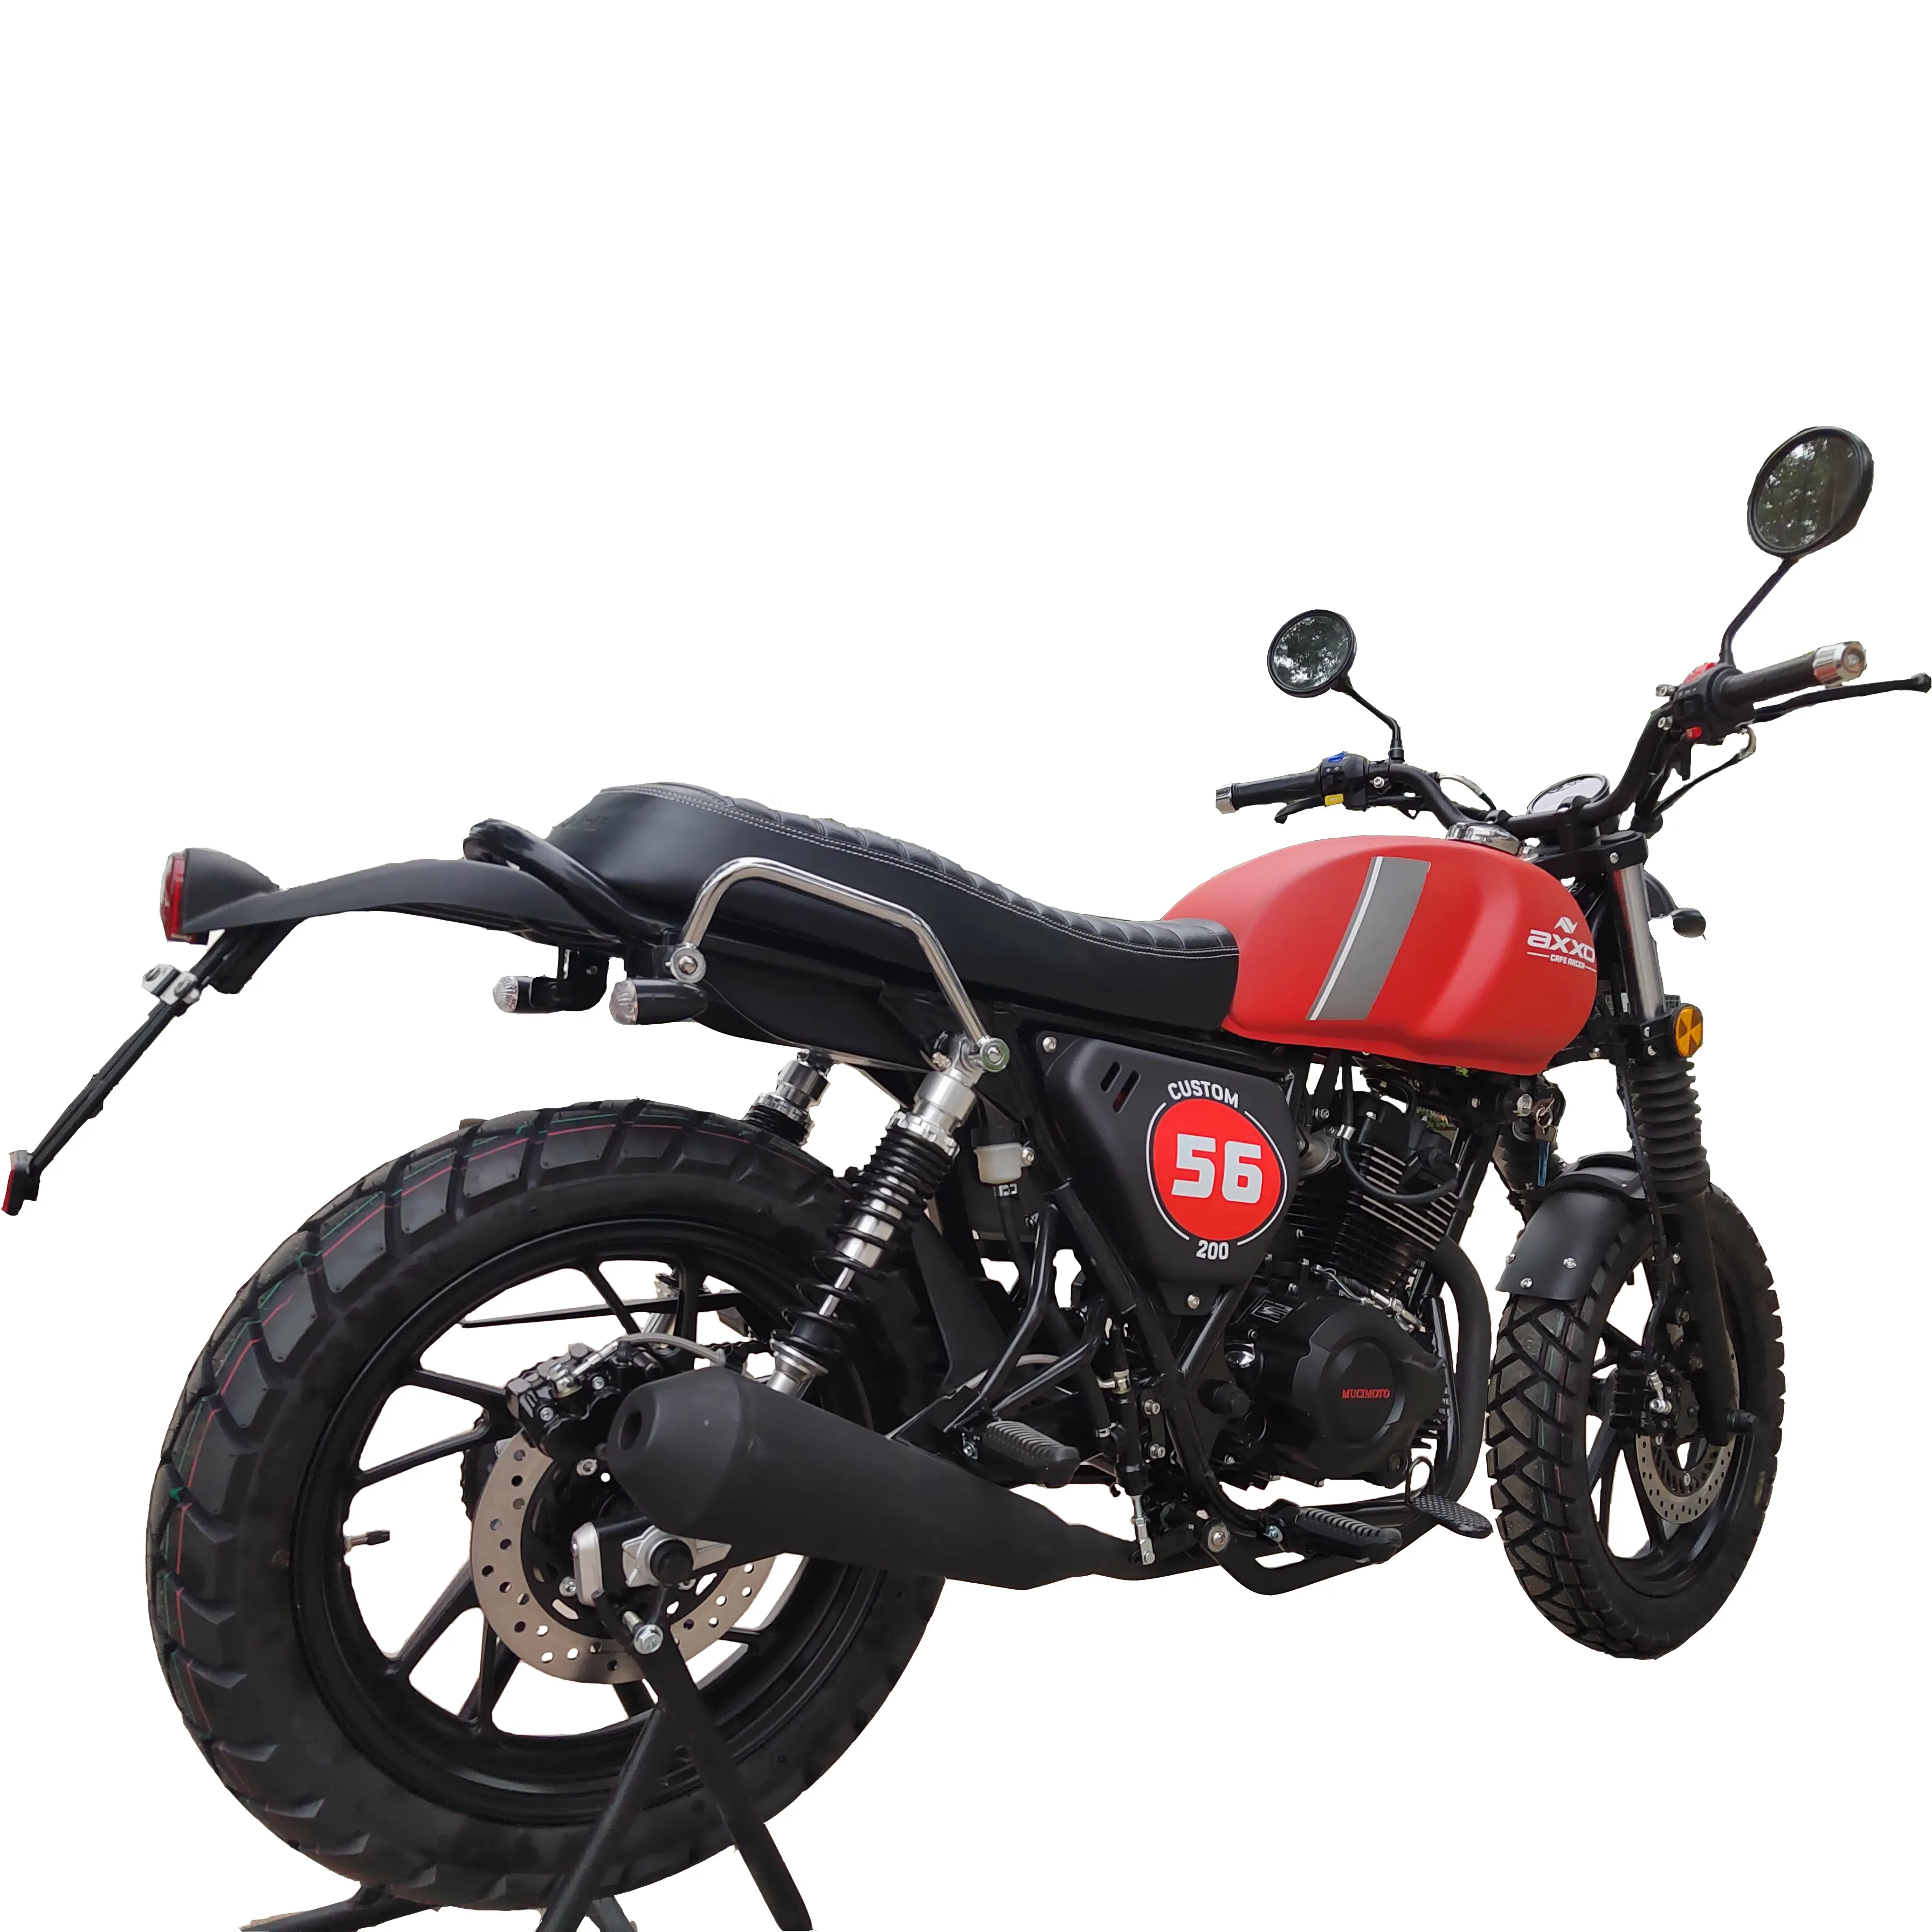 KAVAKIクラシックガソリン125cc 150cc 200cc4ストロークバランスシャフトエンジンファッションヴィンテージトライアンフ2輪バイク